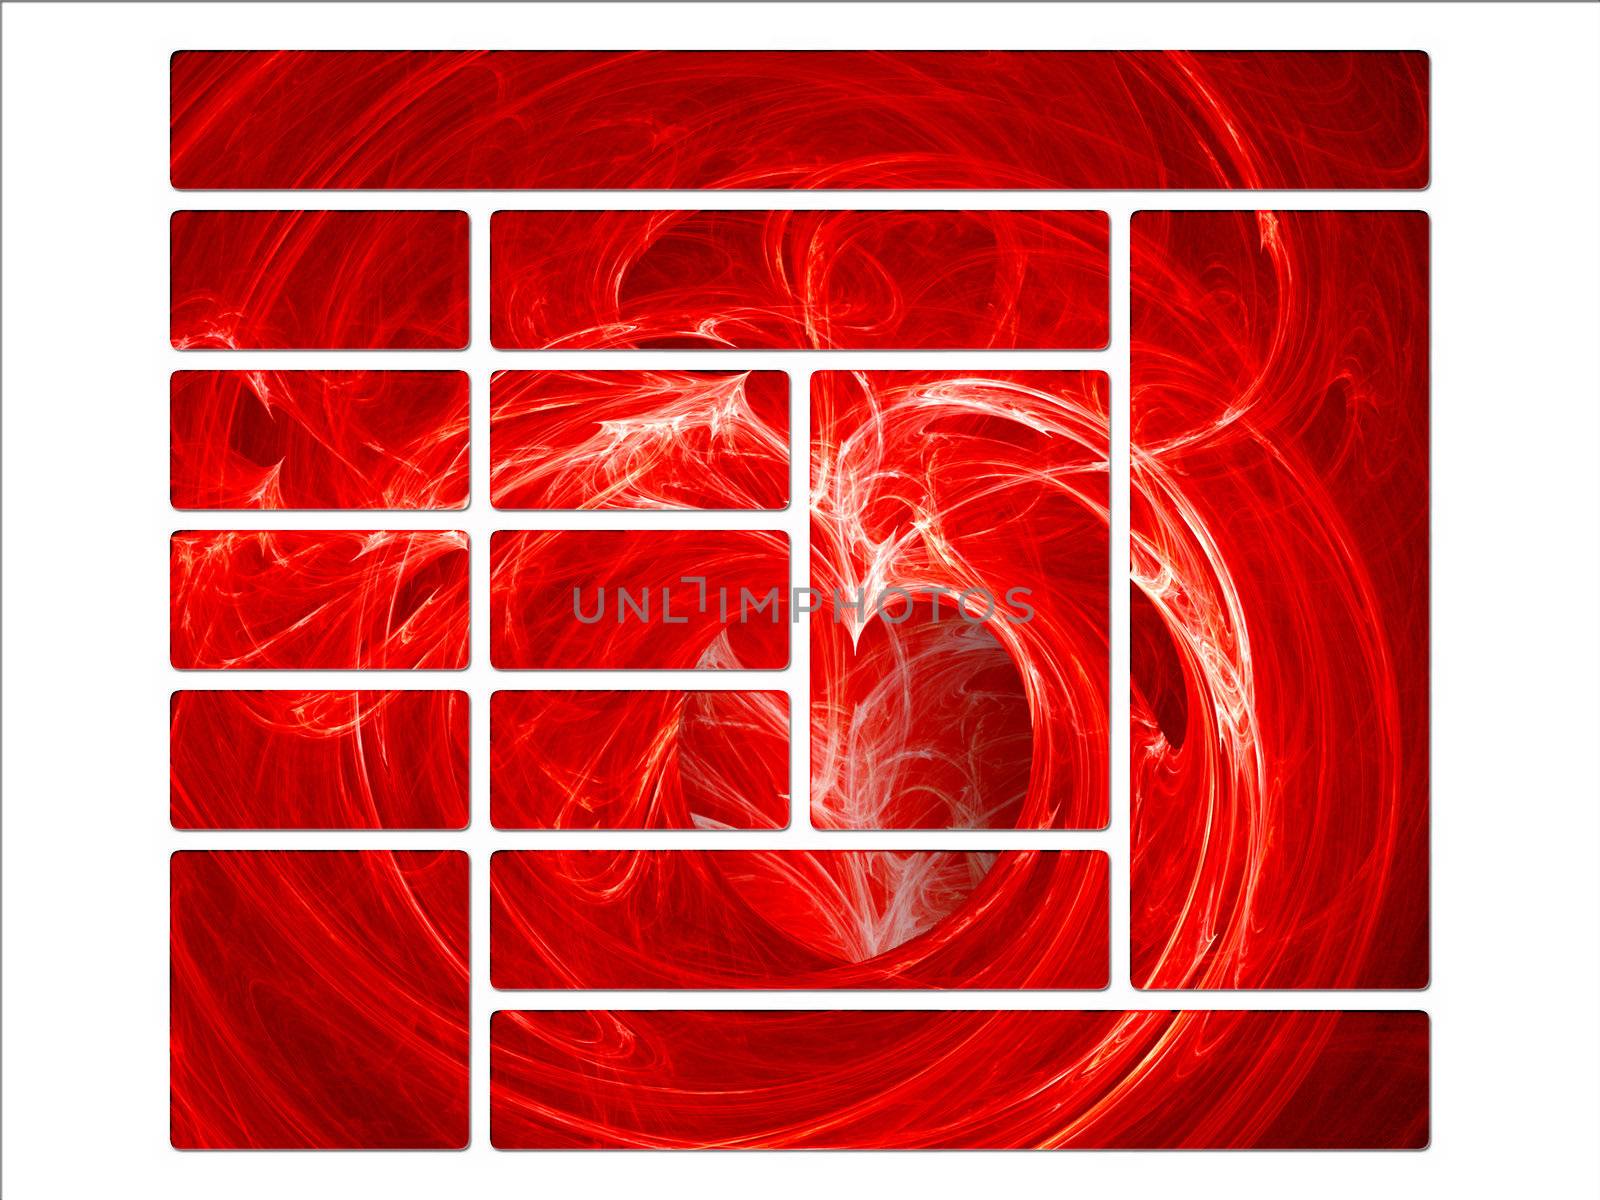 Fractal Swirly Heart on Fire Website Design Layout